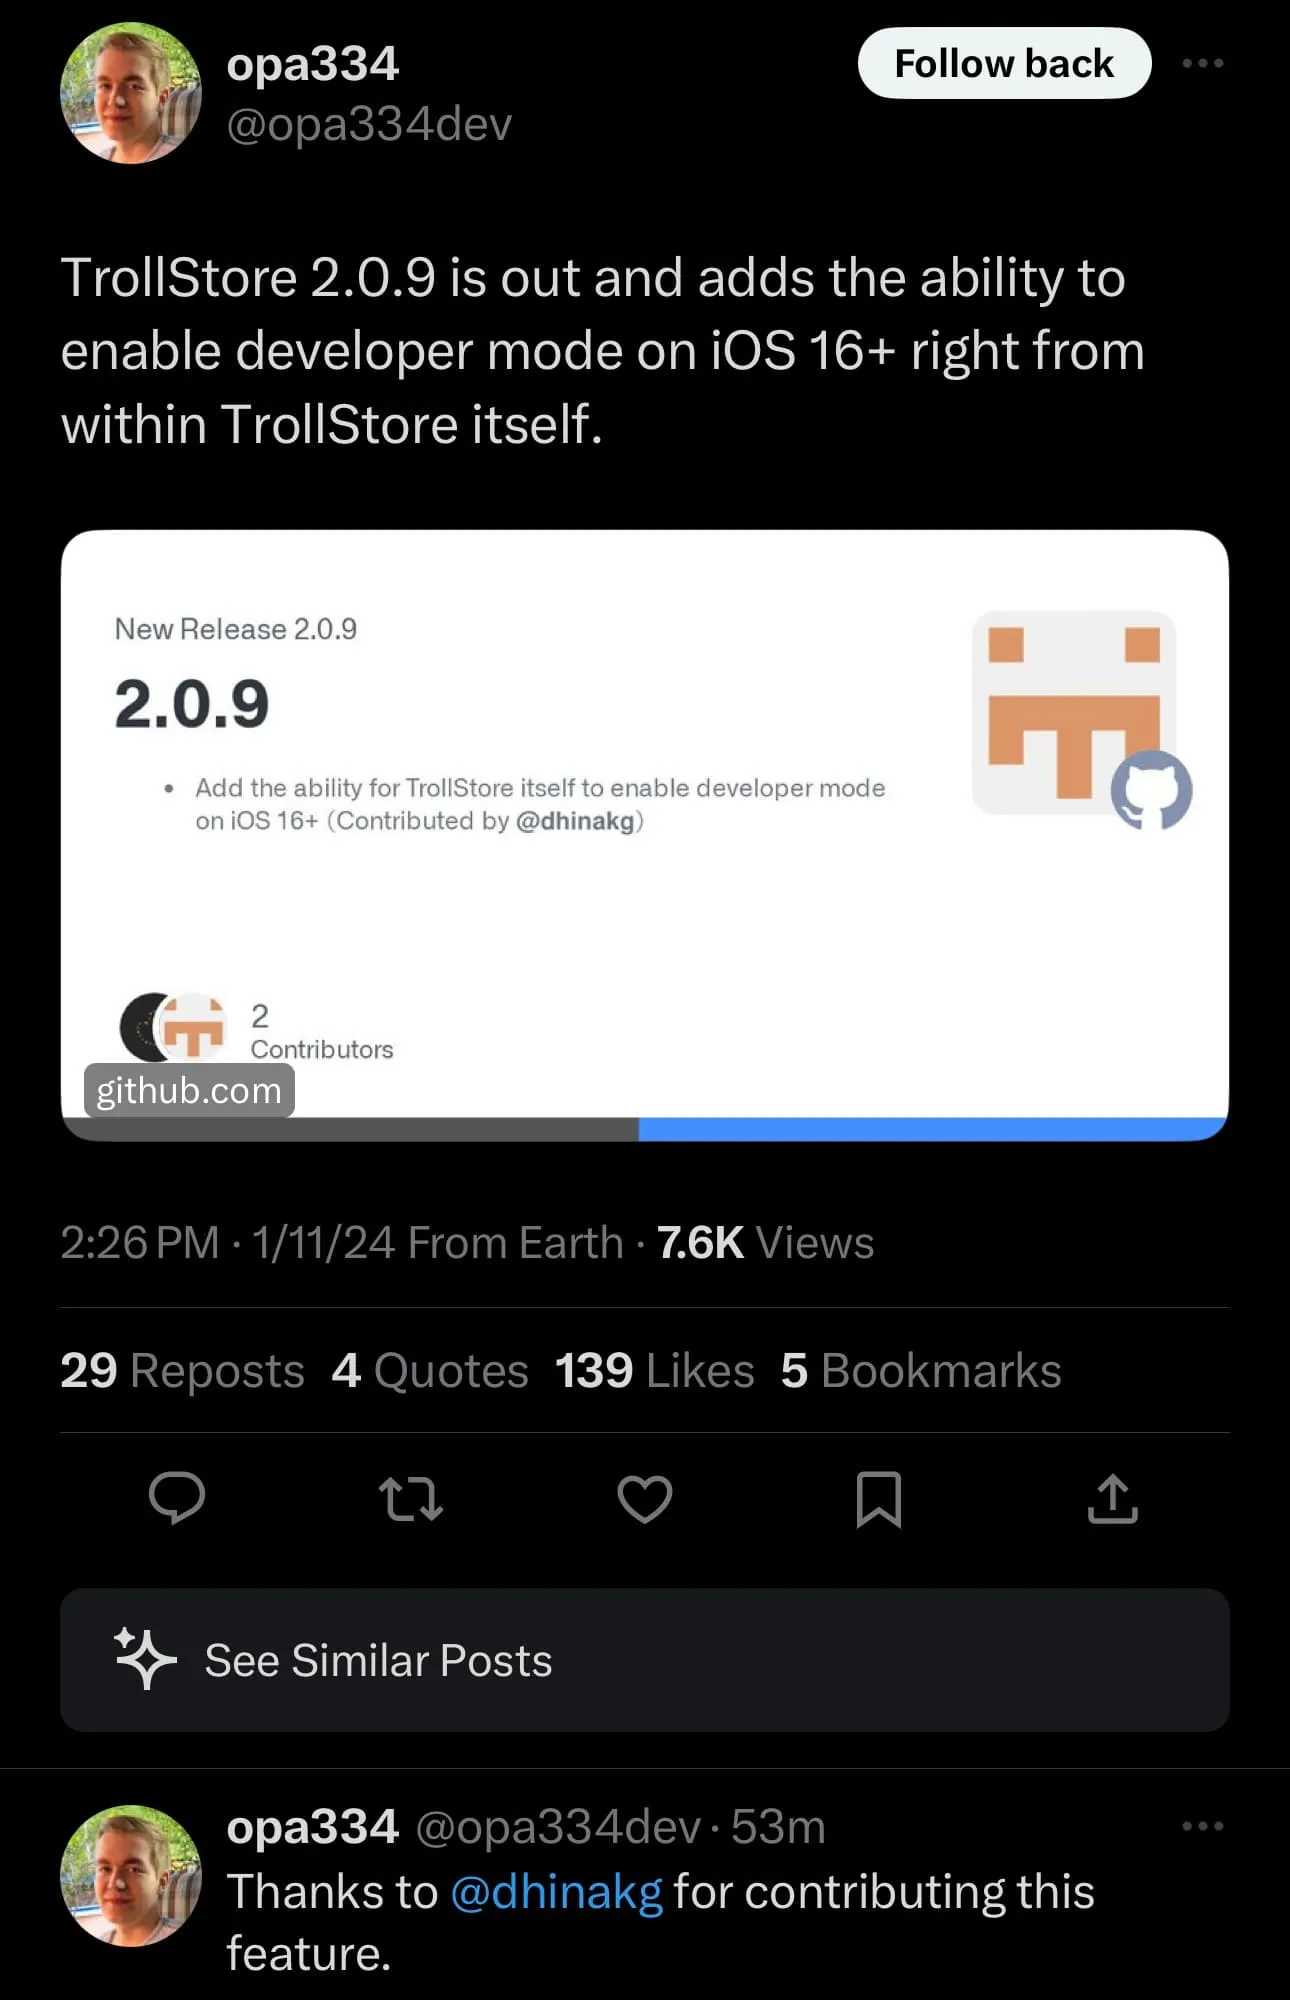 TrollStore v2.0.9 lanzado y anunciado.